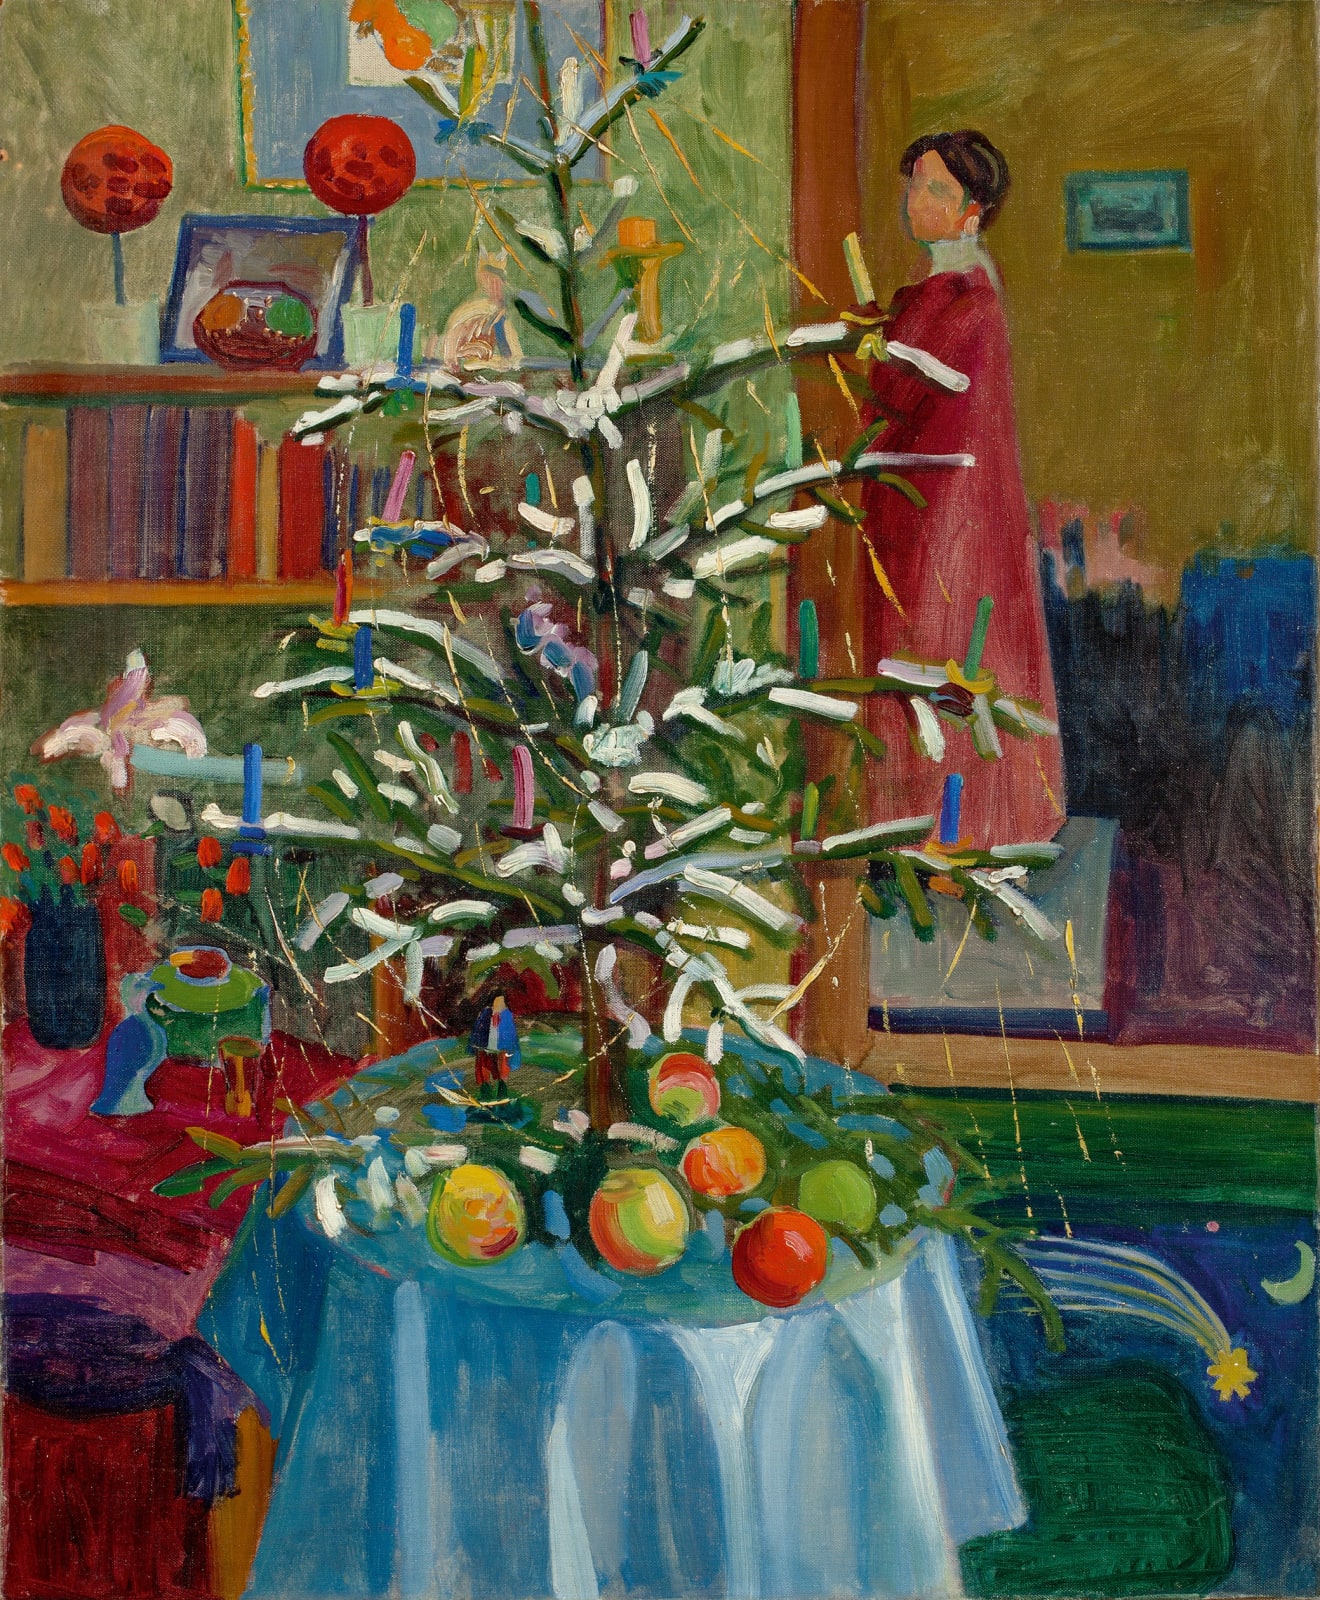 GABRIELE MÜNTER, Interieur mit Weihnachtsbaum (Selbstbildnis), ca. 1908-09